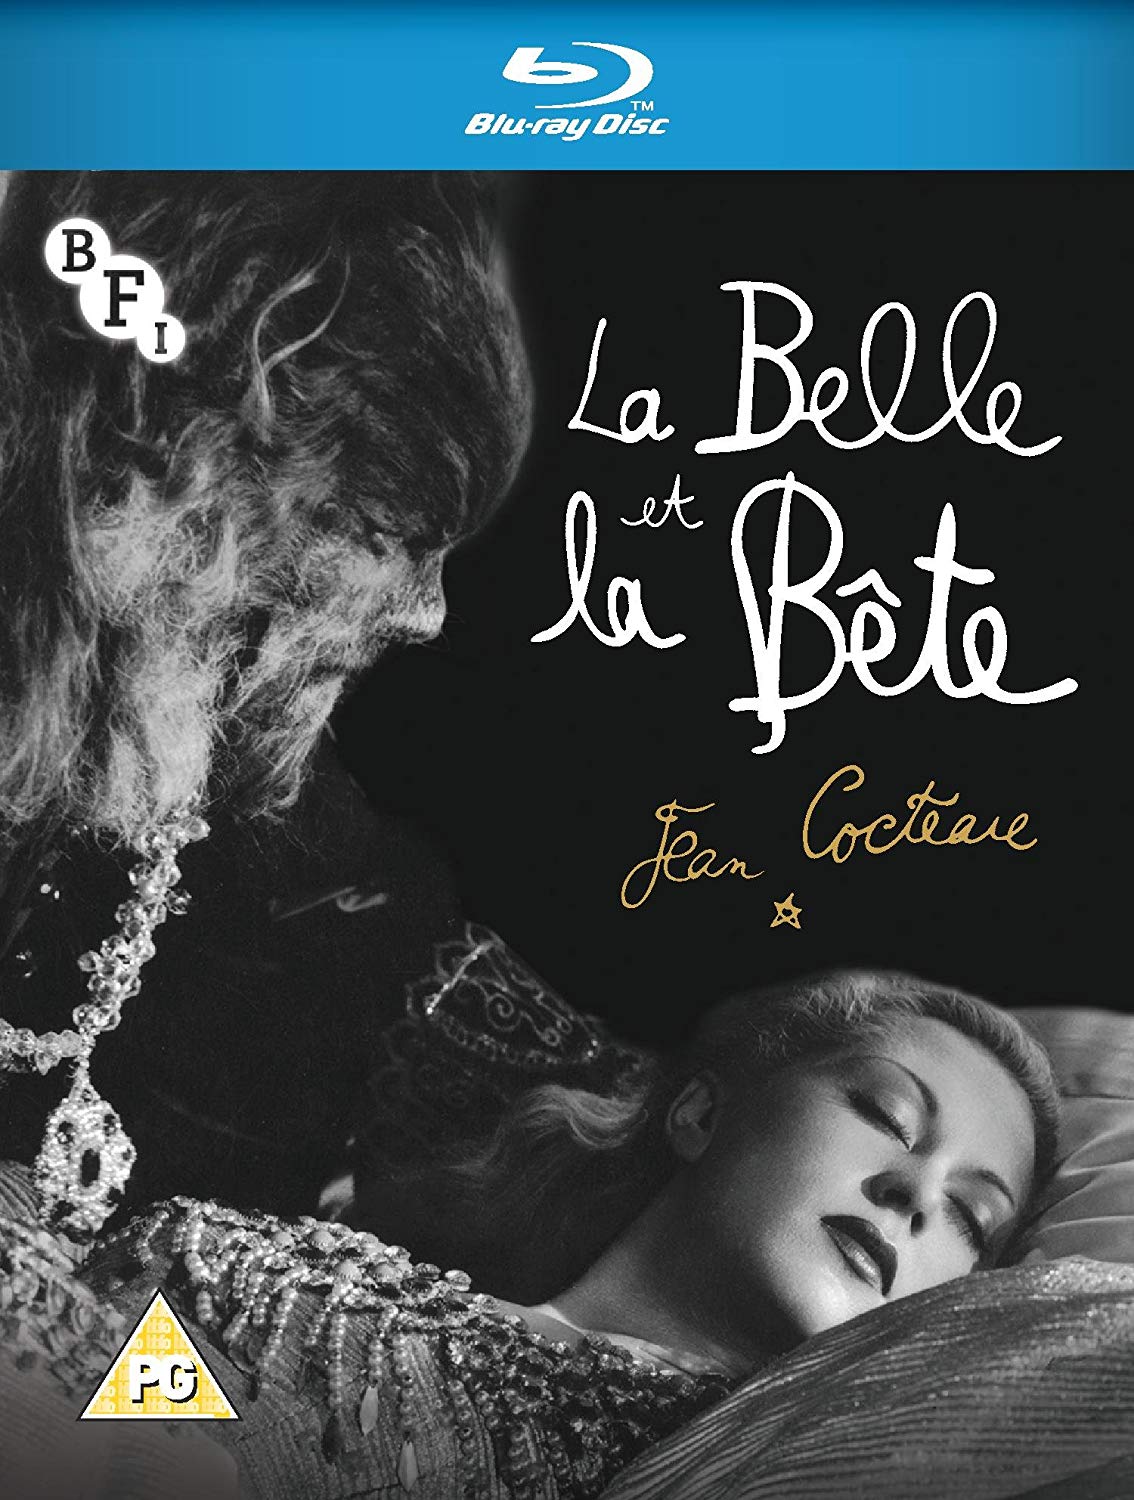 La Belle et la Bête (1991) (Disney Classics, Version Cinéma, Version Longue)